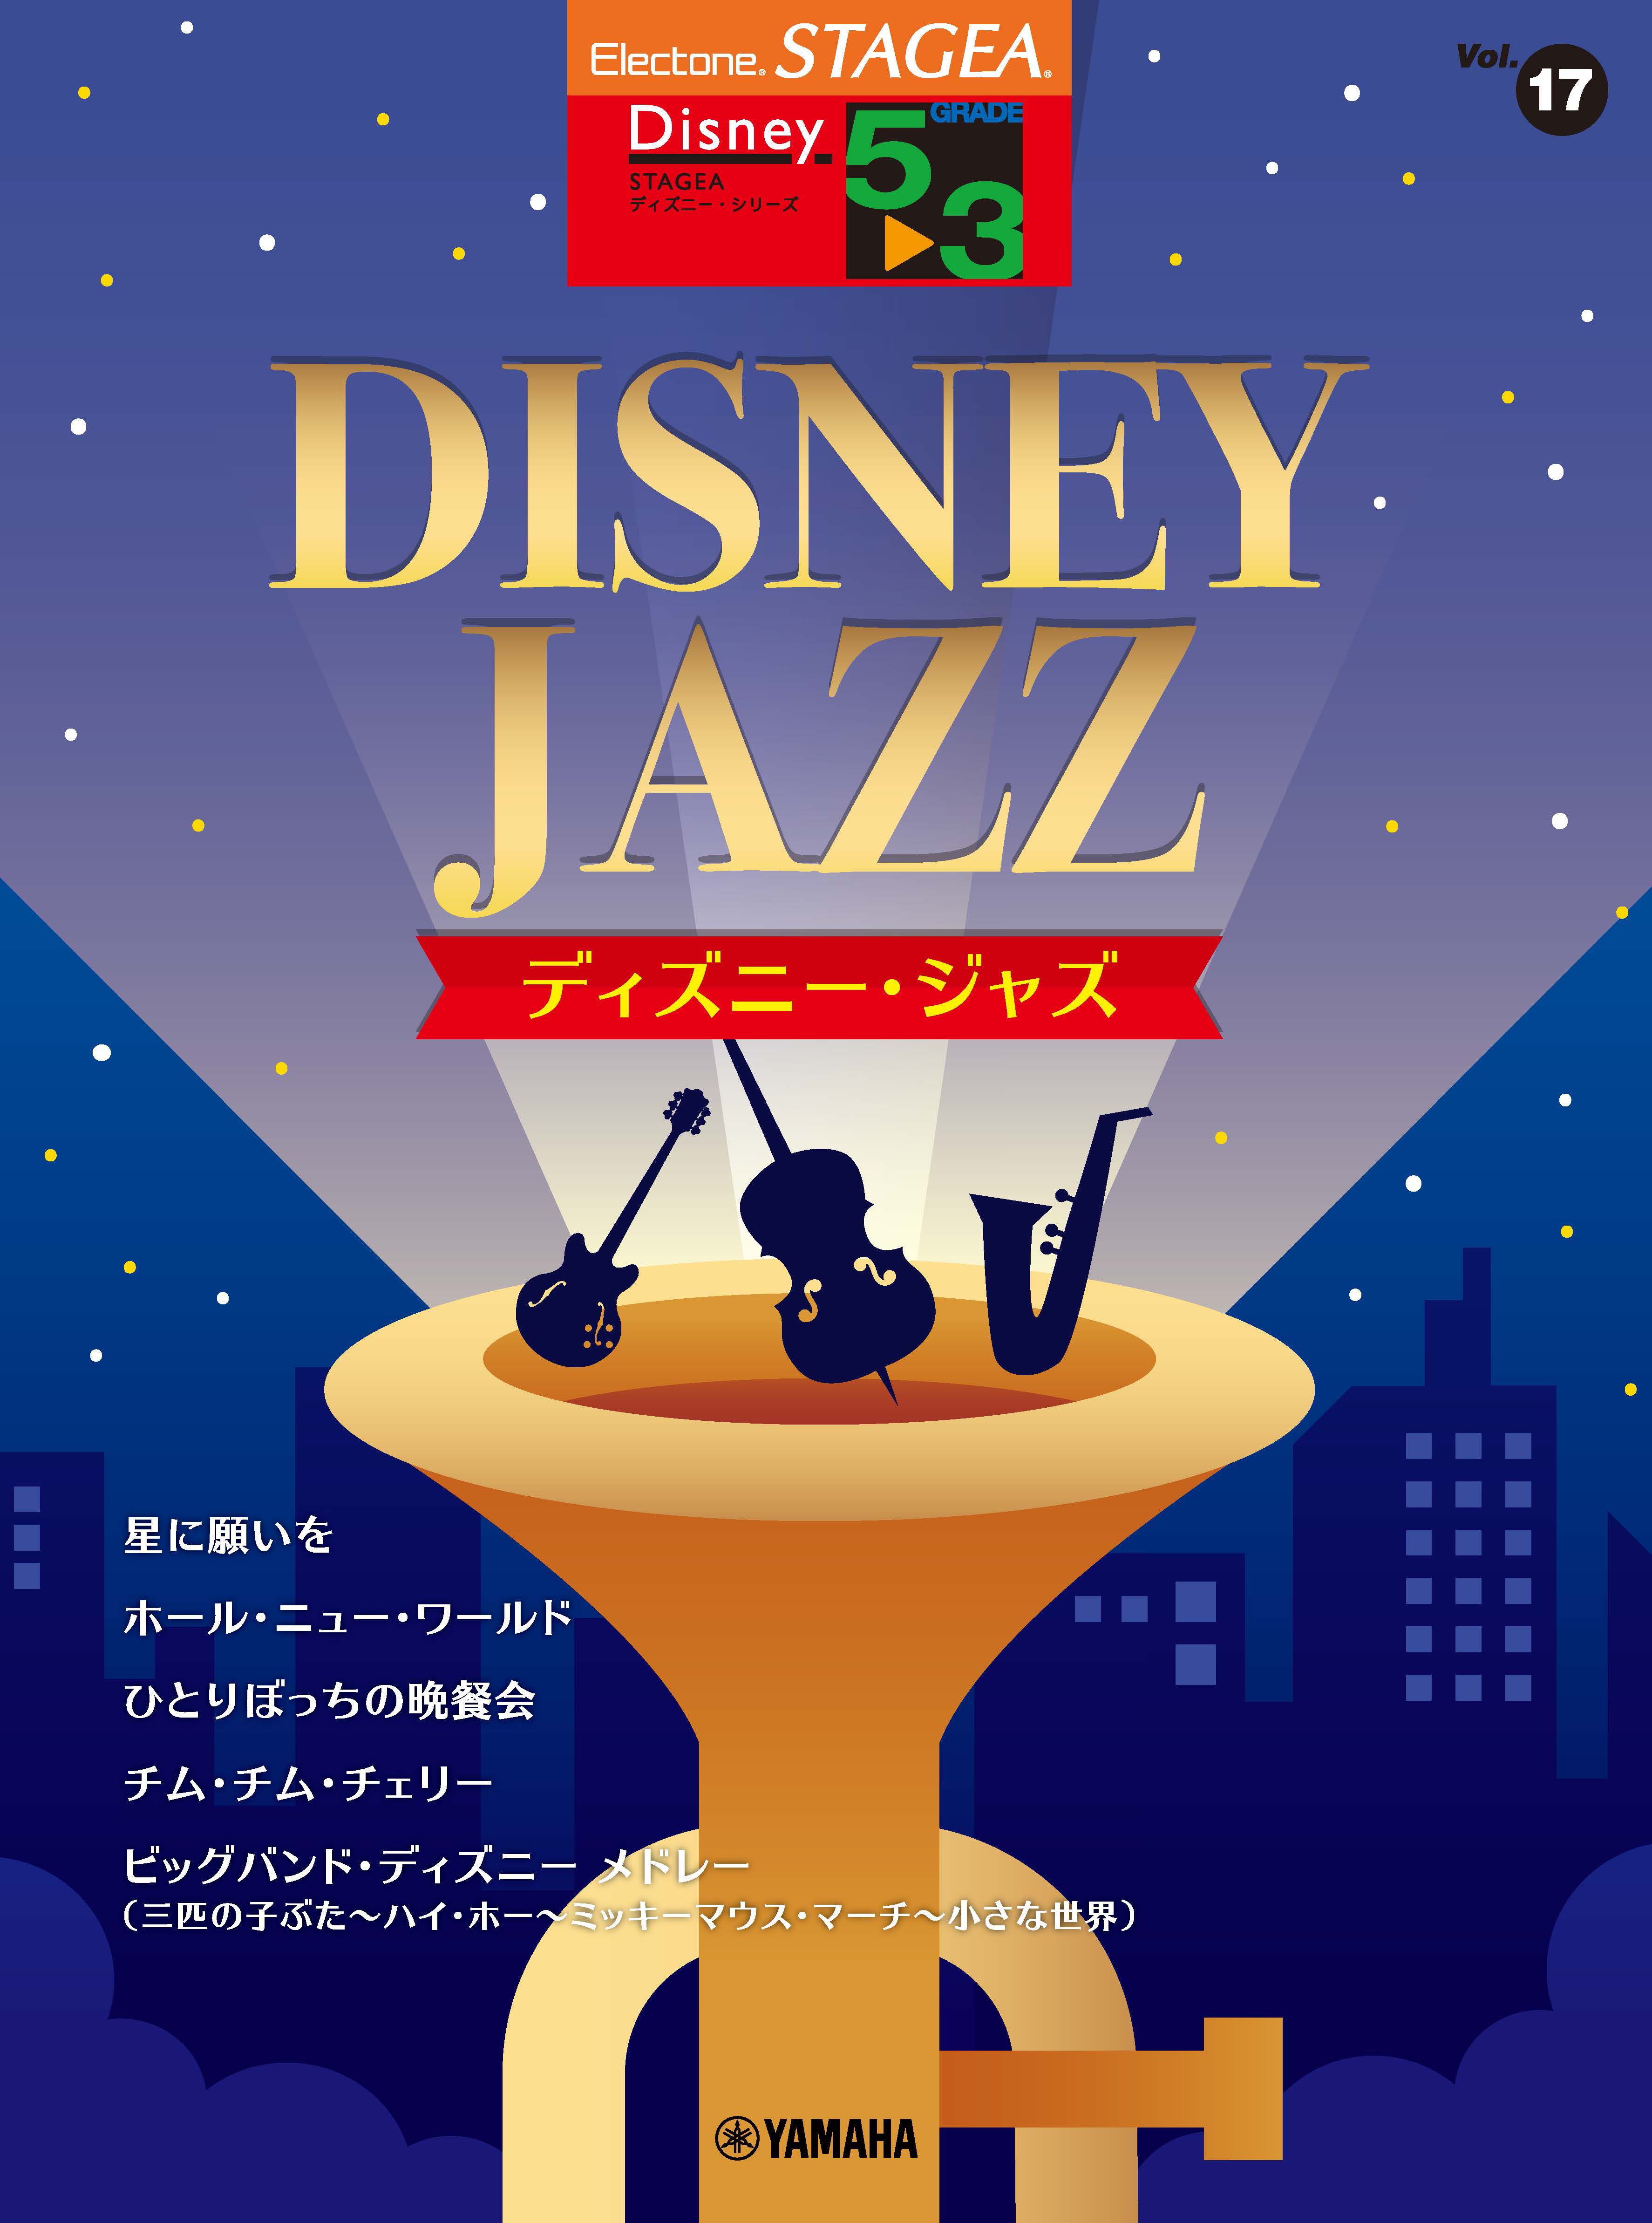 エレクトーン Stagea ディズニー 5 3級 Vol 17 ディズニー ジャズ 10月28日発売 Newscast